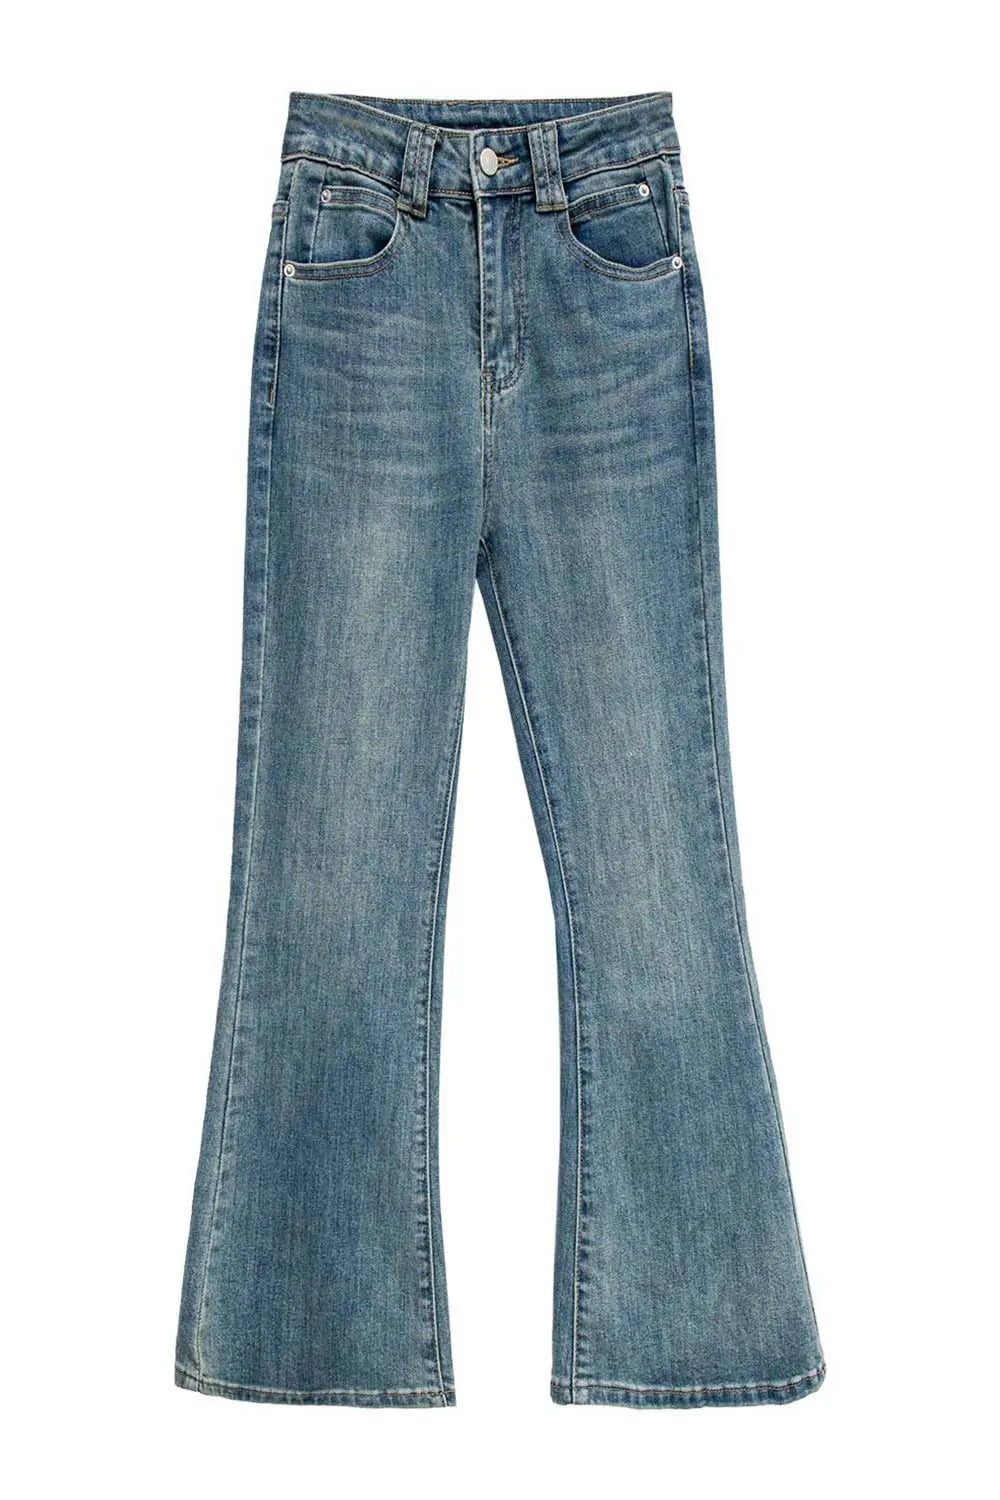 Quần jeans ống loe có thiết kế 5 túi cổ điển